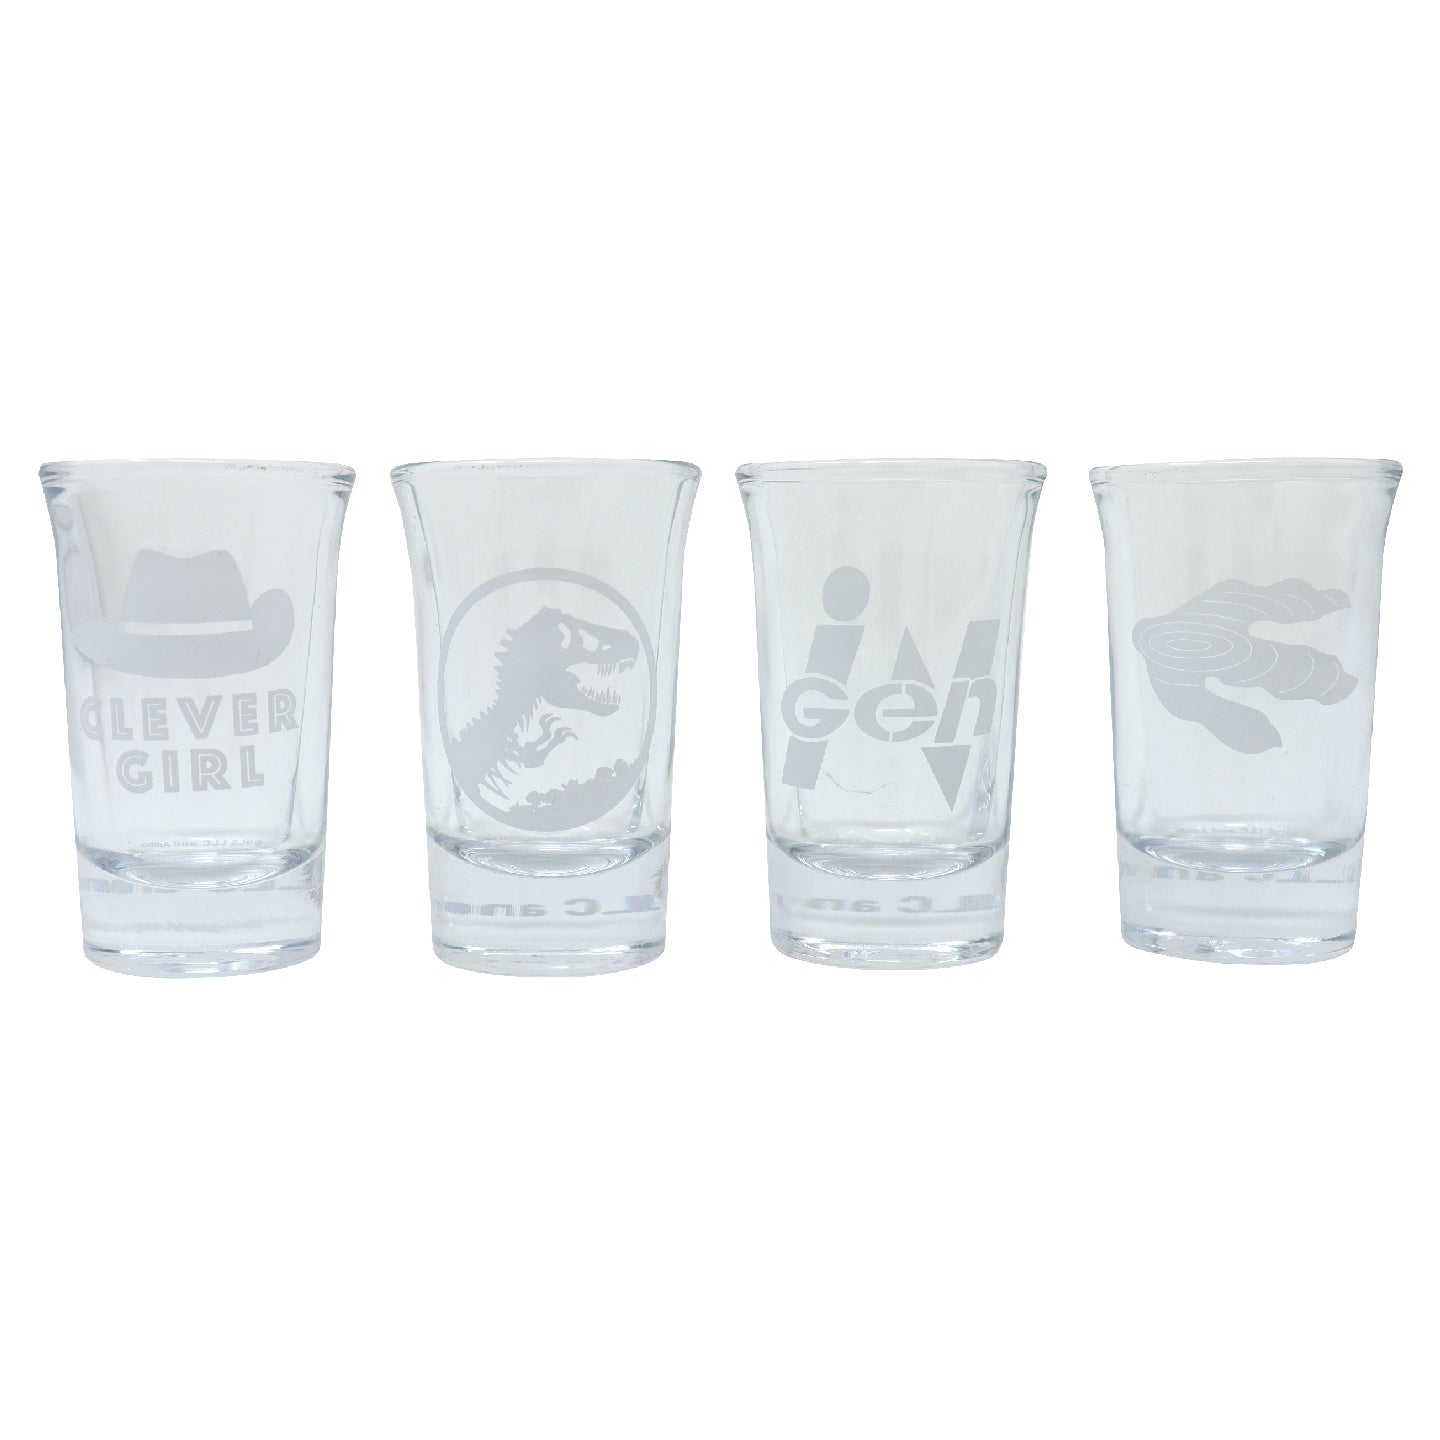 Jurassic Park Premium Set of 4 Shot Glasses